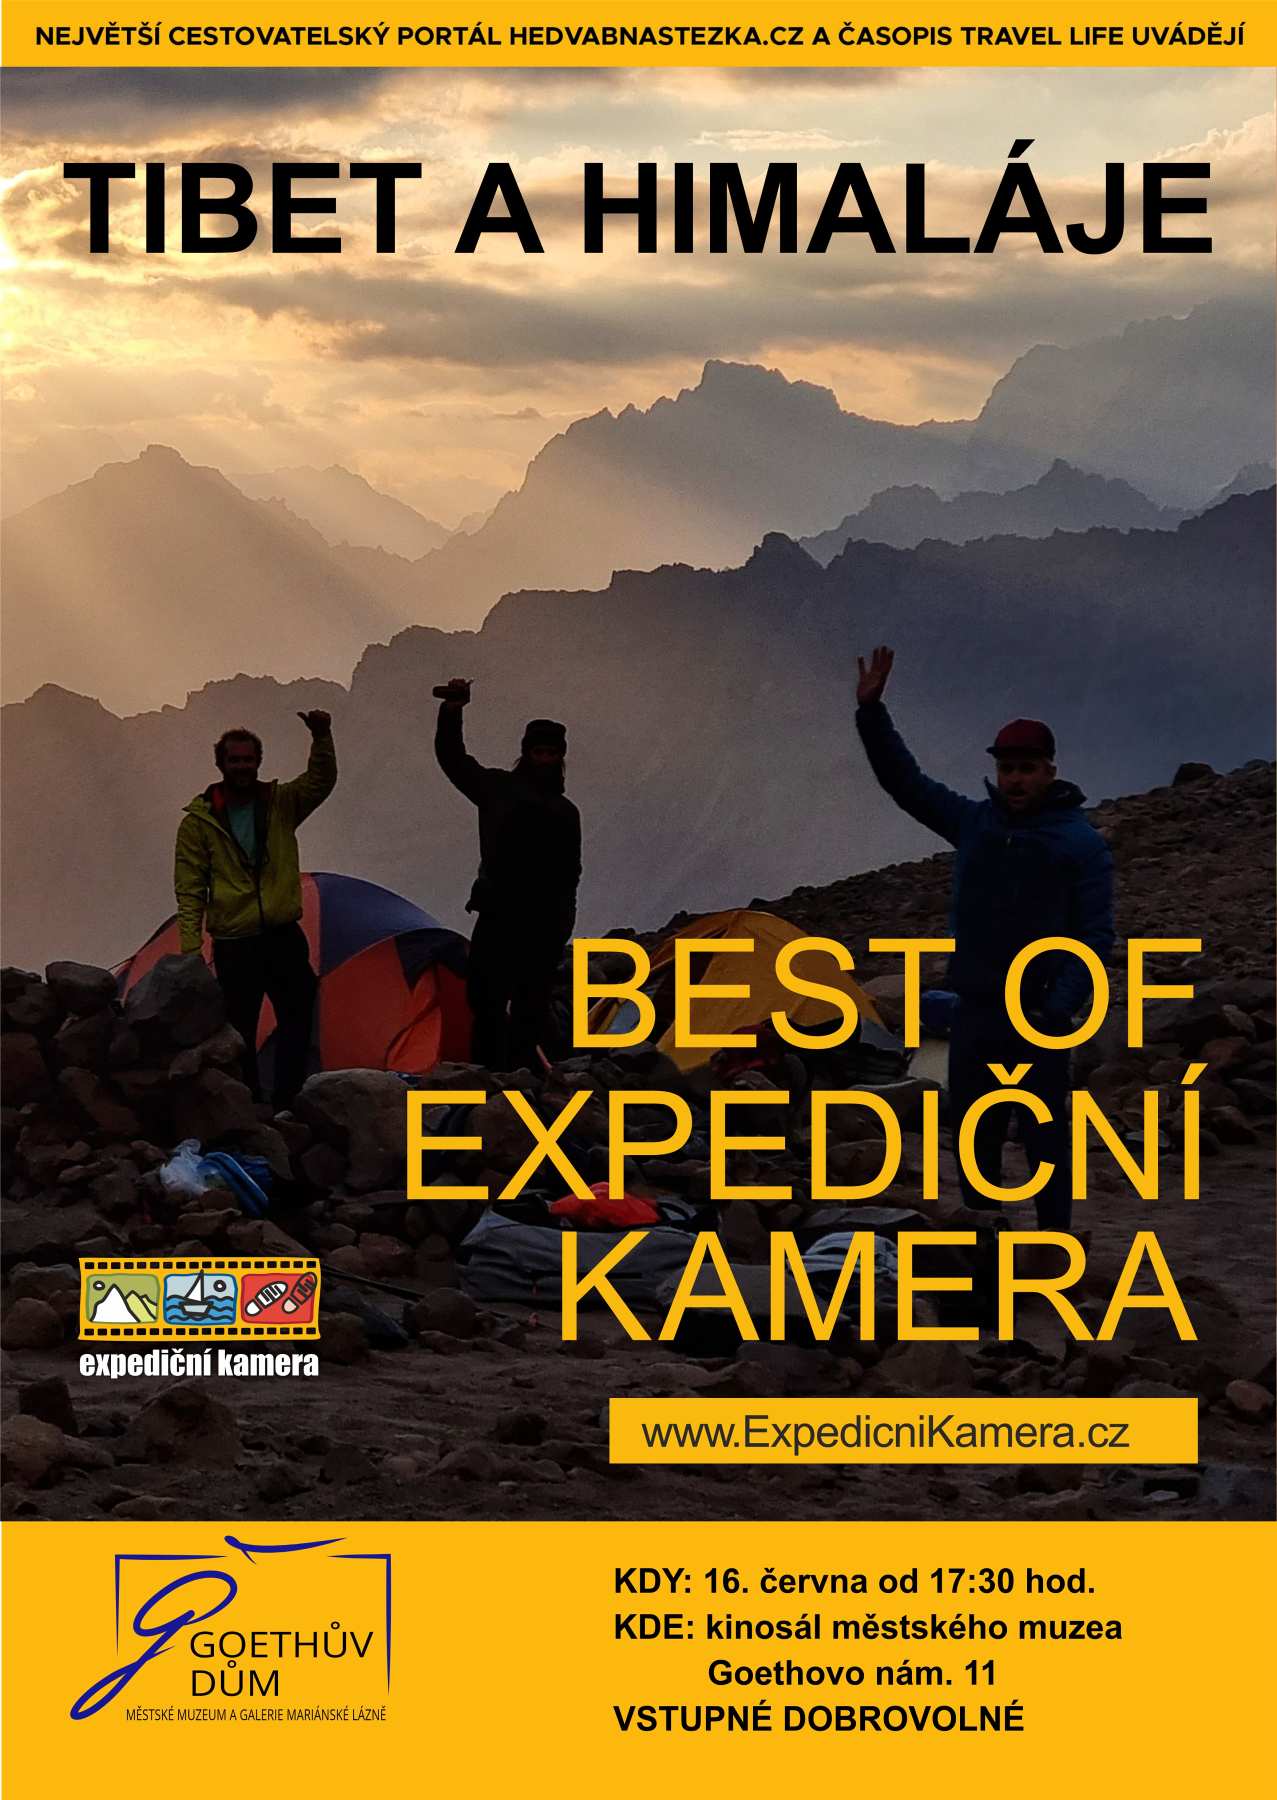 The best of Expediční kamera – Tibet a Himaláje